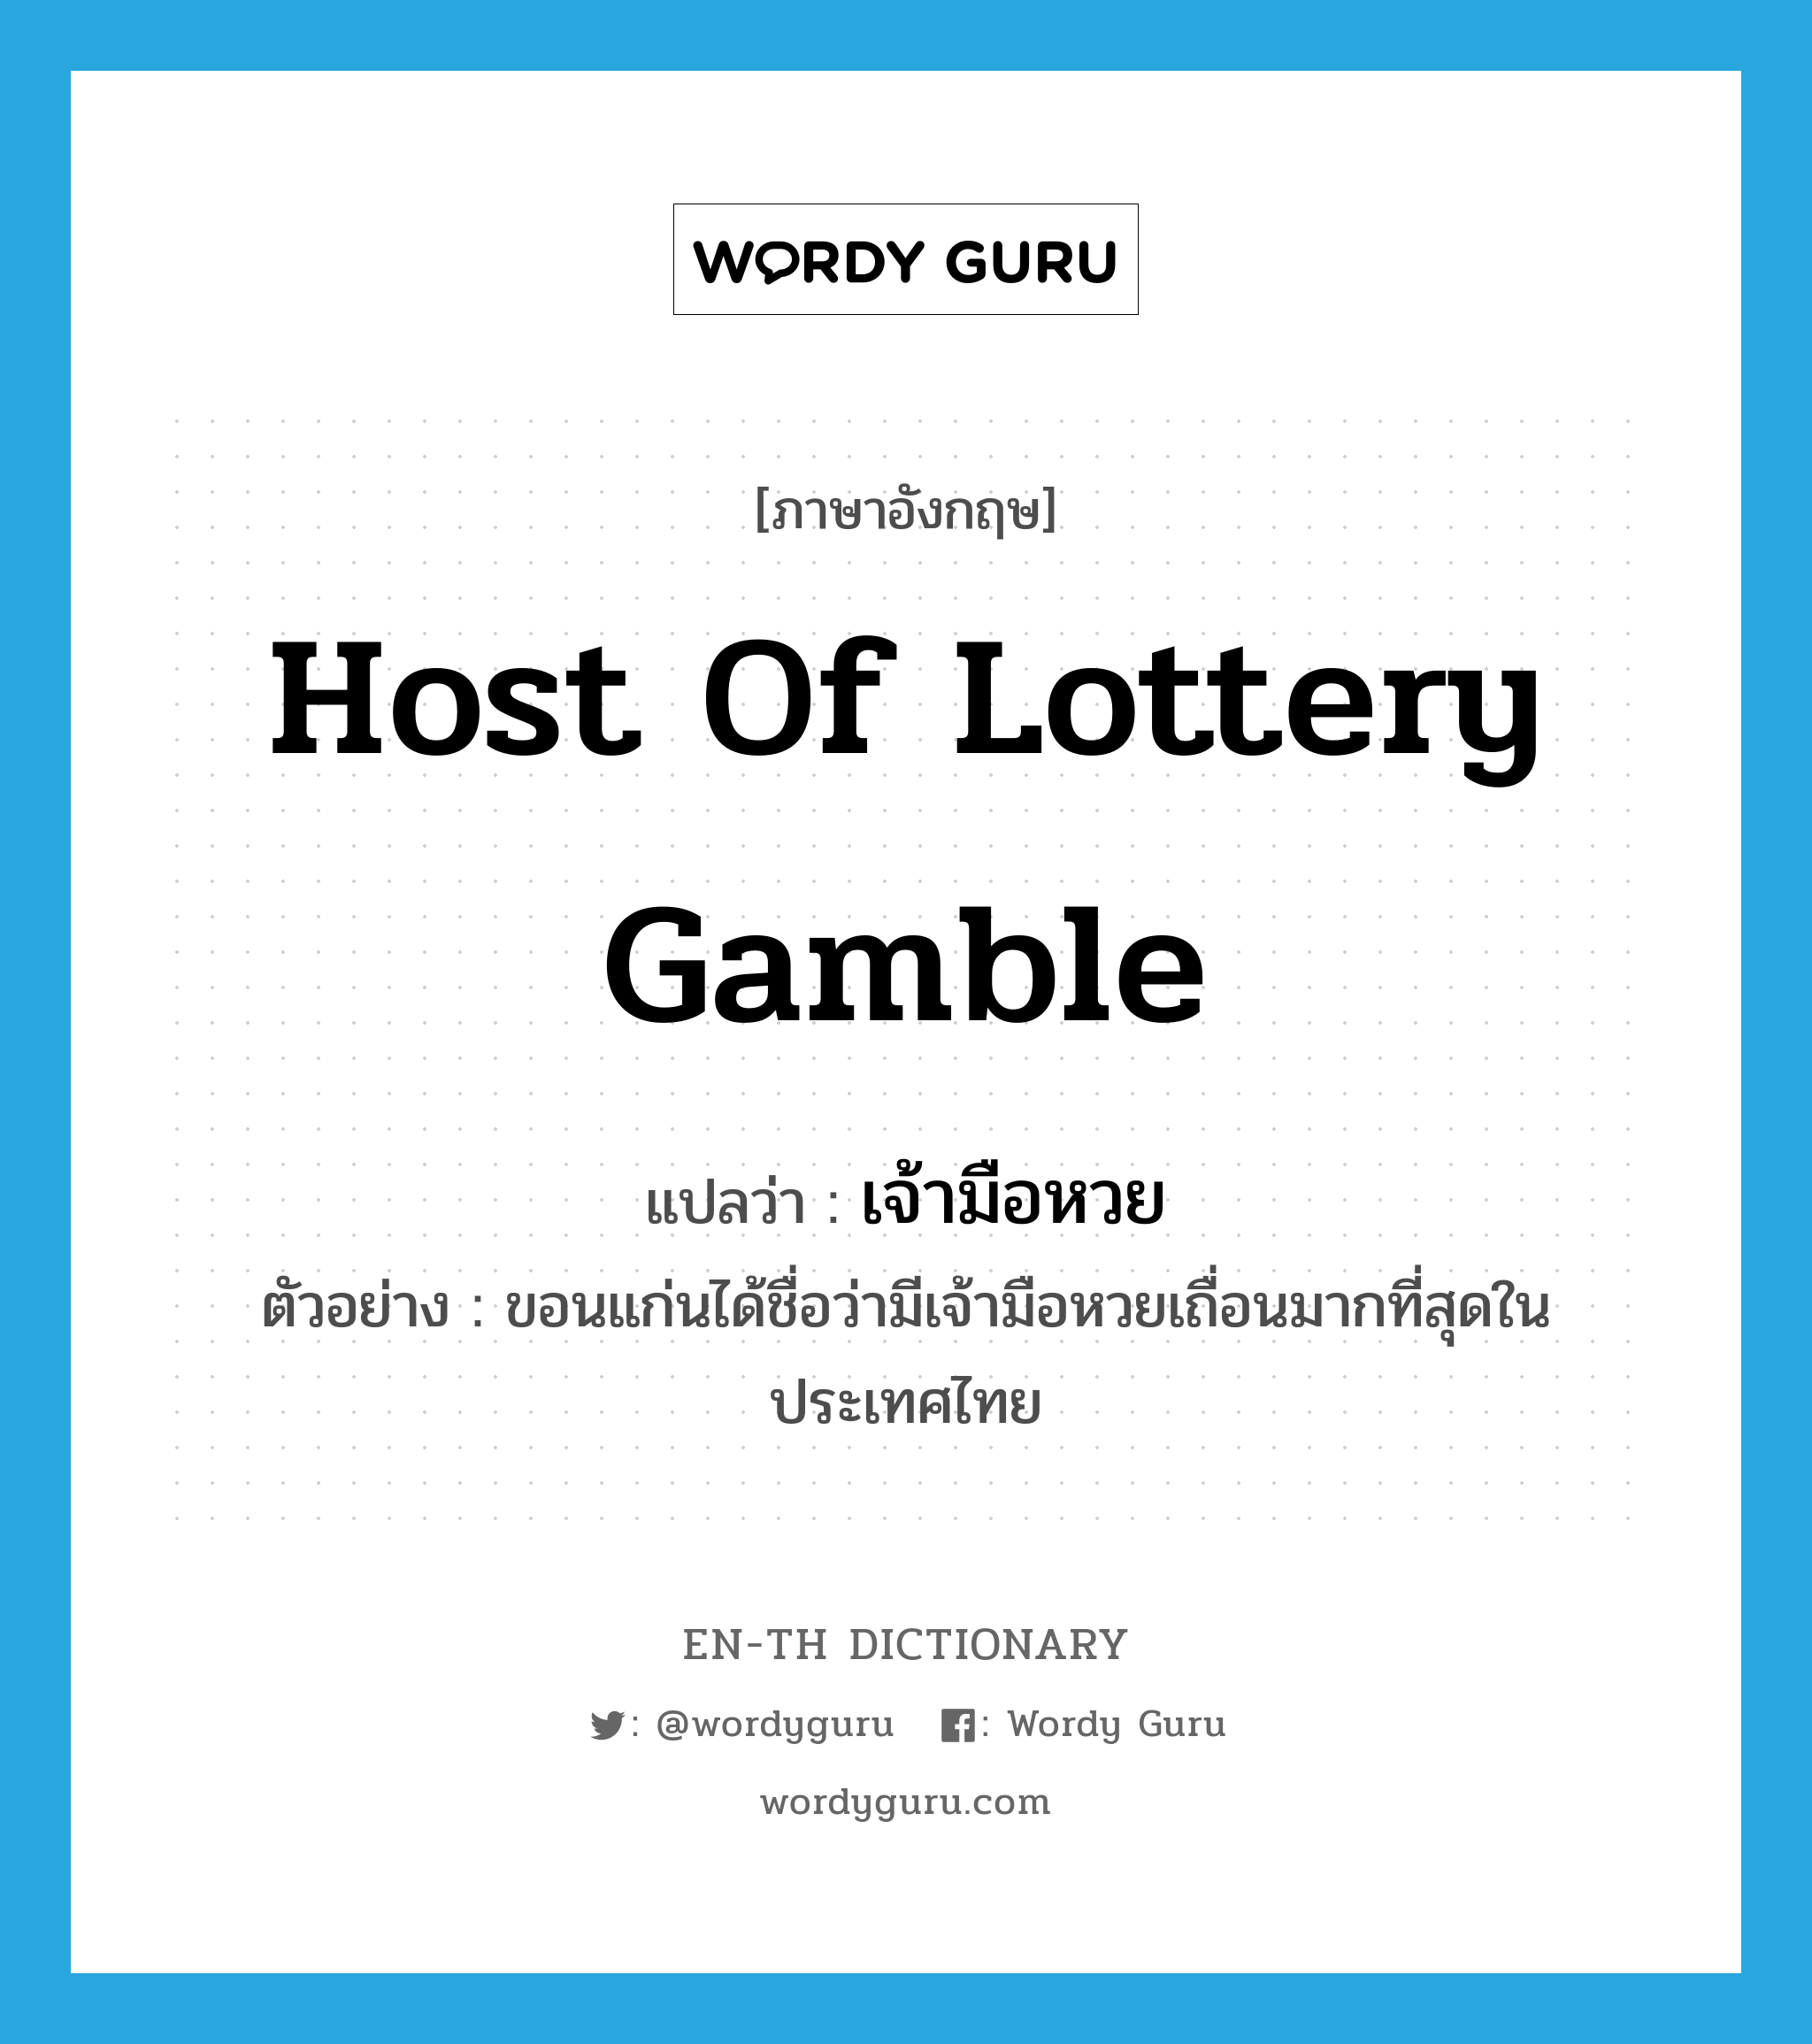 เจ้ามือหวย ภาษาอังกฤษ?, คำศัพท์ภาษาอังกฤษ เจ้ามือหวย แปลว่า host of lottery gamble ประเภท N ตัวอย่าง ขอนแก่นได้ชื่อว่ามีเจ้ามือหวยเถื่อนมากที่สุดในประเทศไทย หมวด N